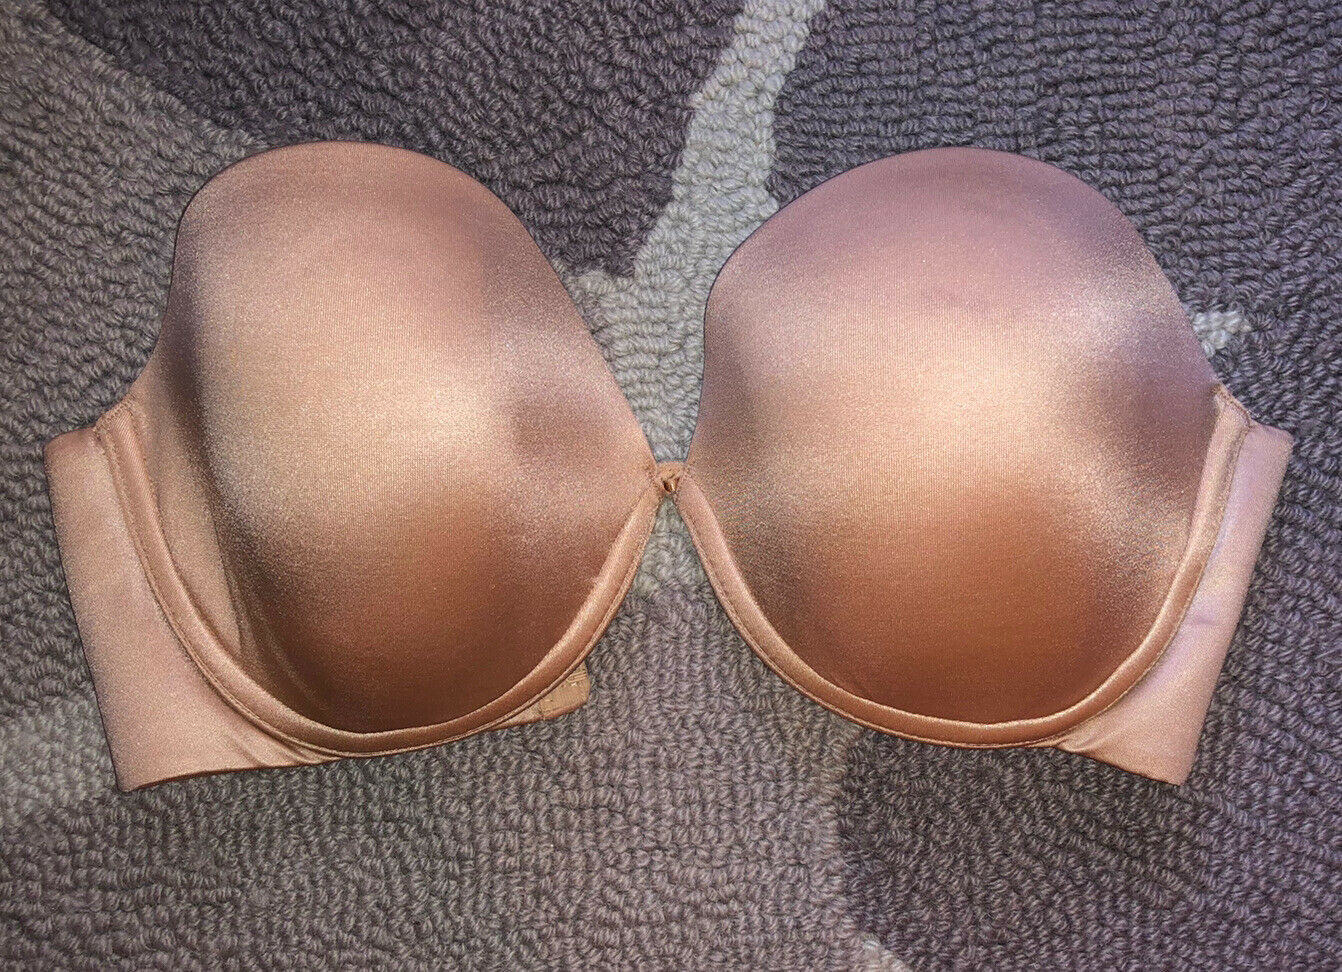 Victoria's Secret Body by Victoria Lind Perfect Coverage Bra Nude